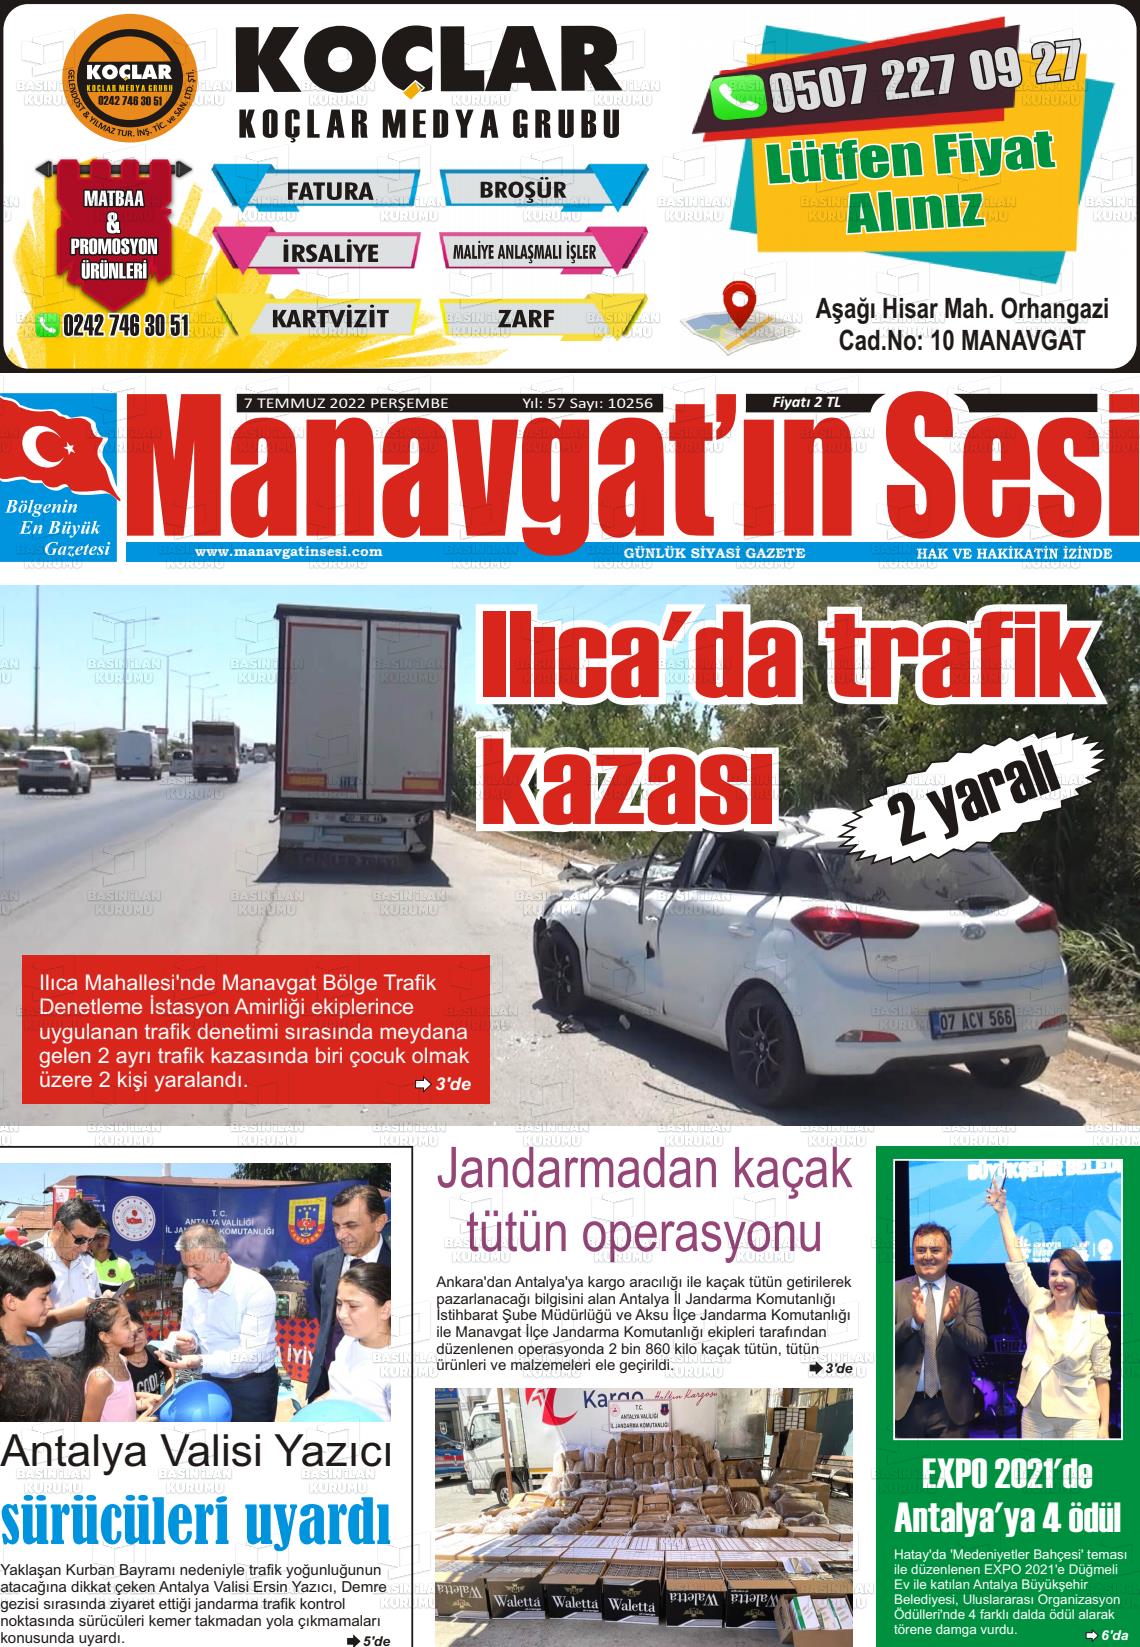 07 Temmuz 2022 Manavgat'ın Sesi Gazete Manşeti